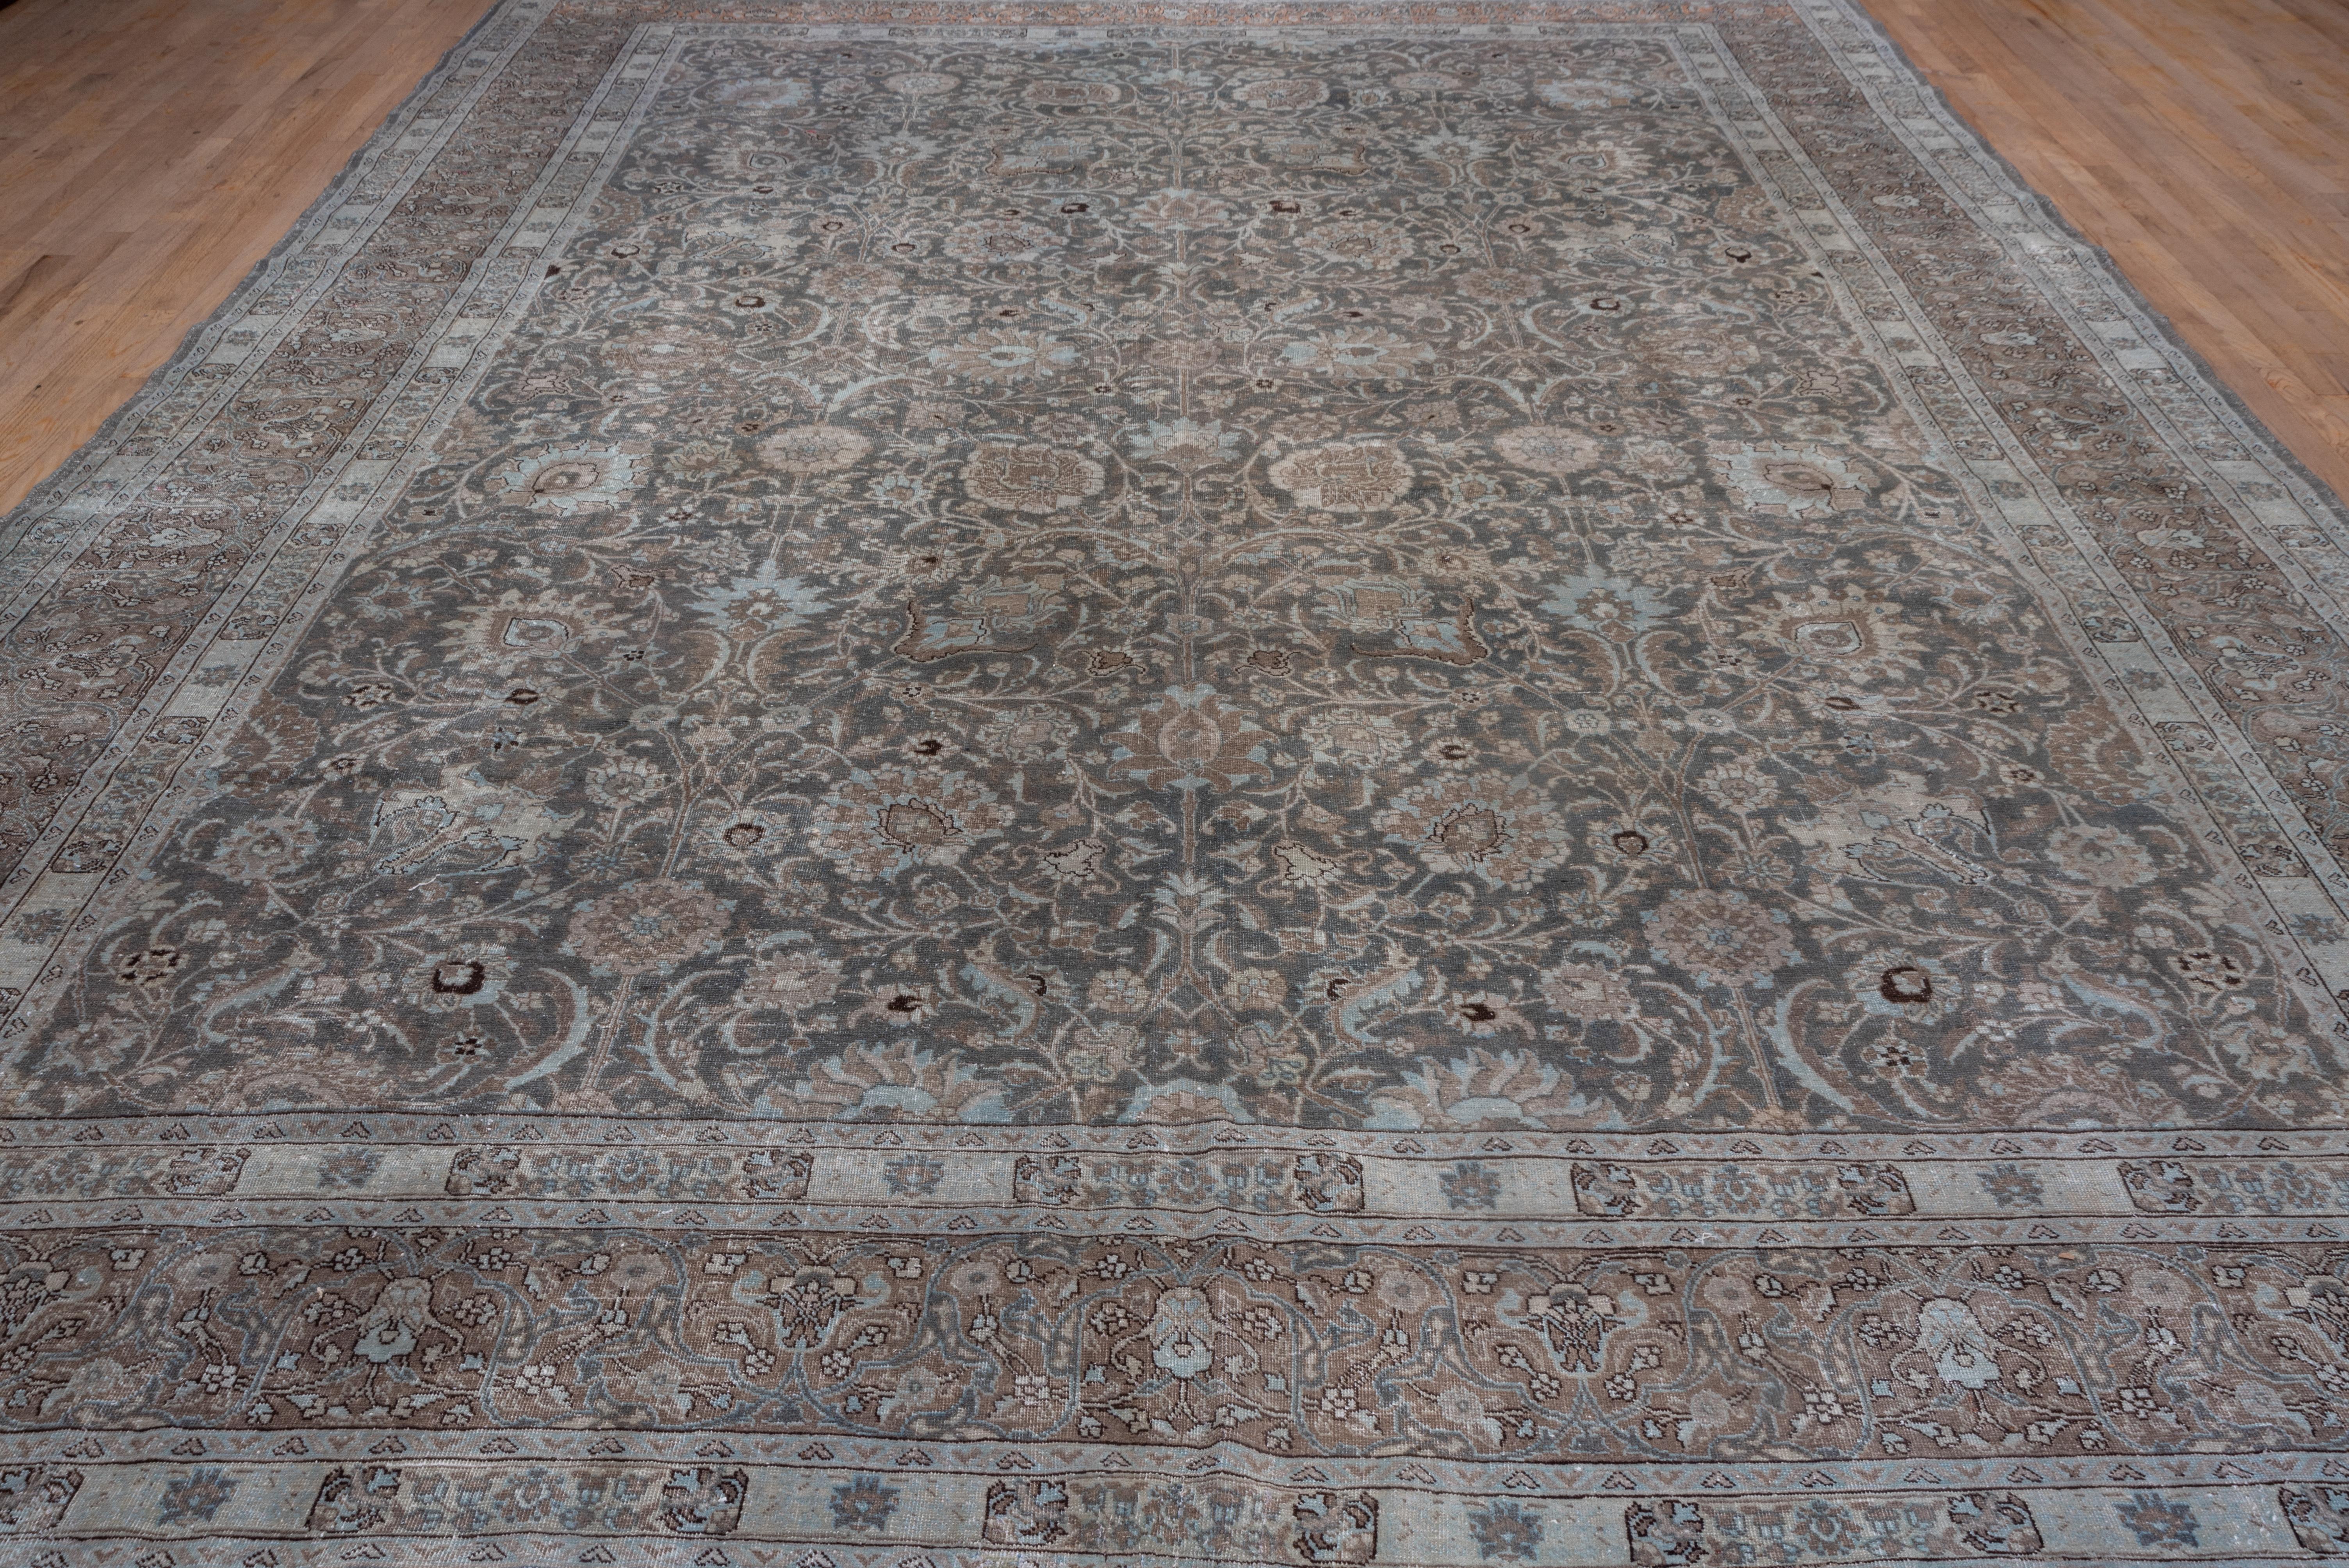 Dieser nordwestpersische Stadtteppich zeigt eine gut gezeichnete Version des klassischen Vase-Teppich